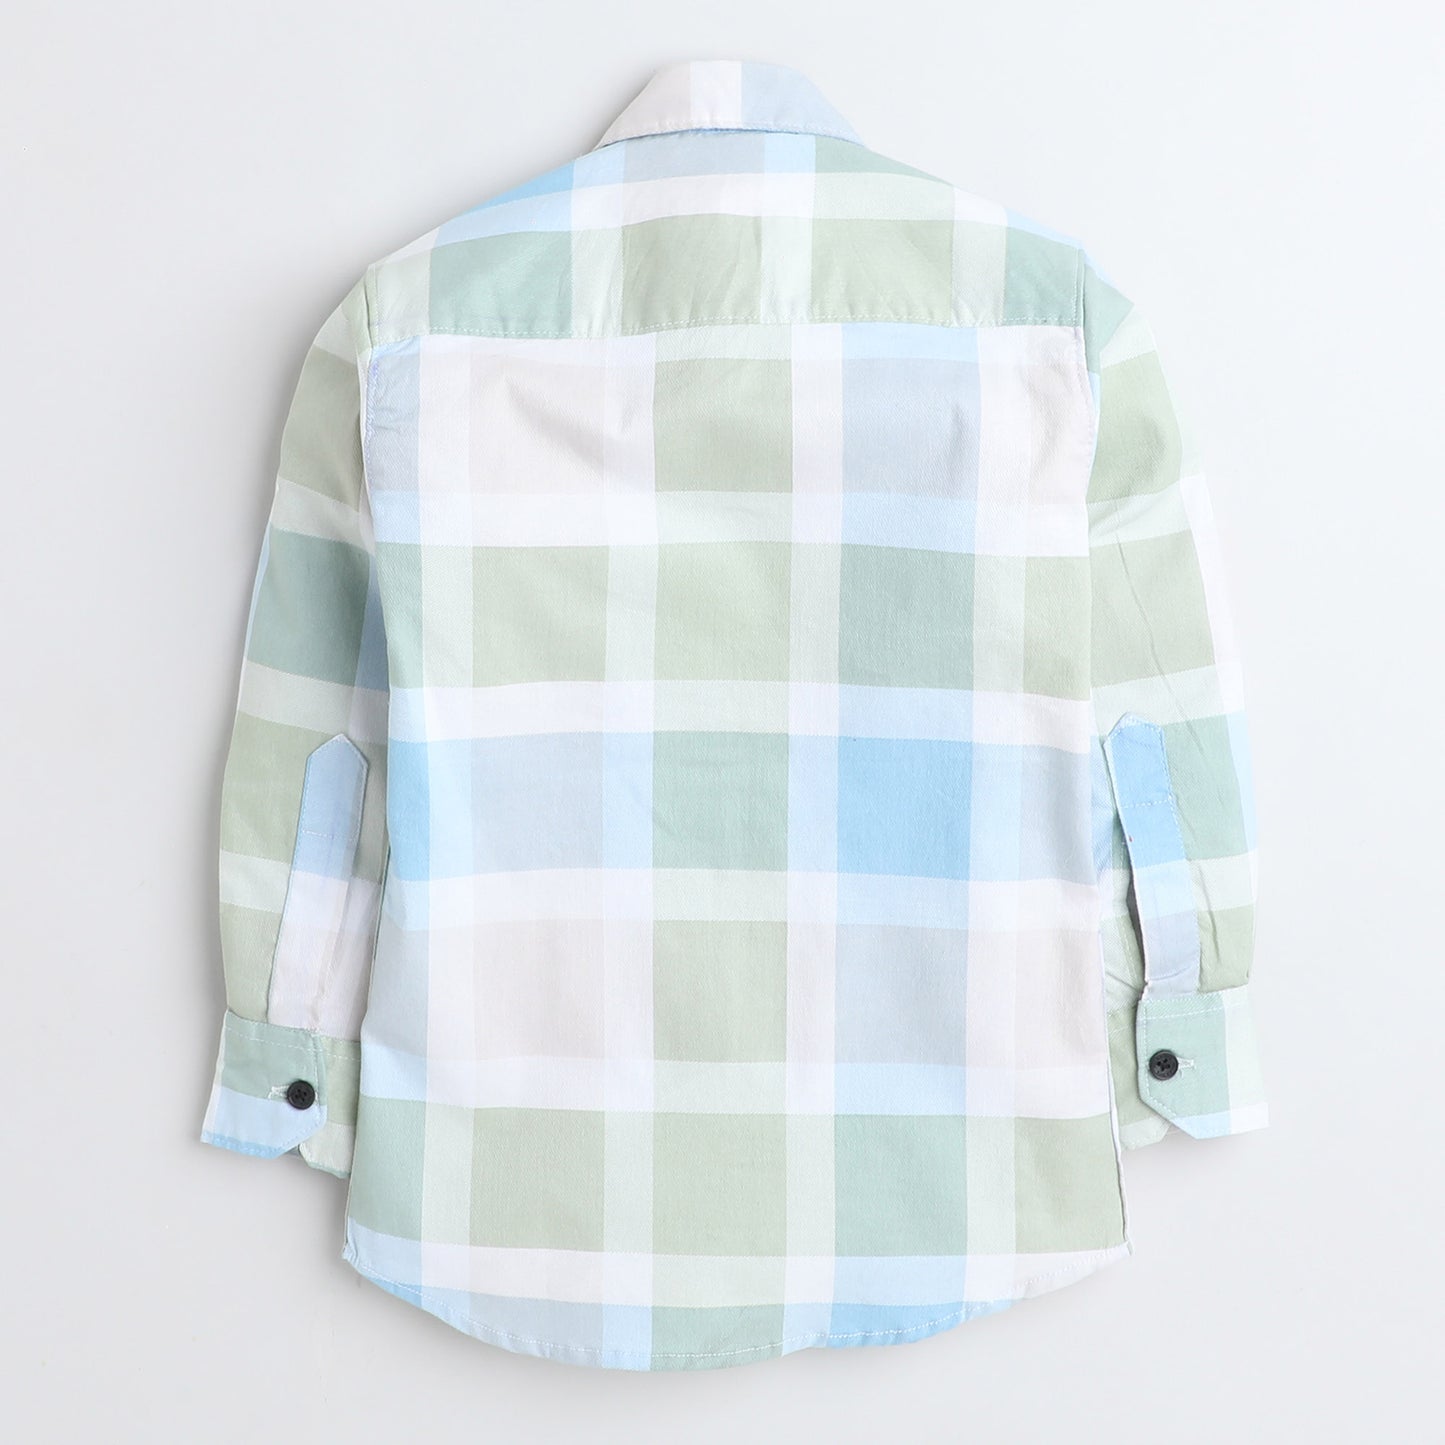 Polka Tots Cotton Full Sleeves Big Check Shirt With Polka Tots Pocket Print - Cream and Green